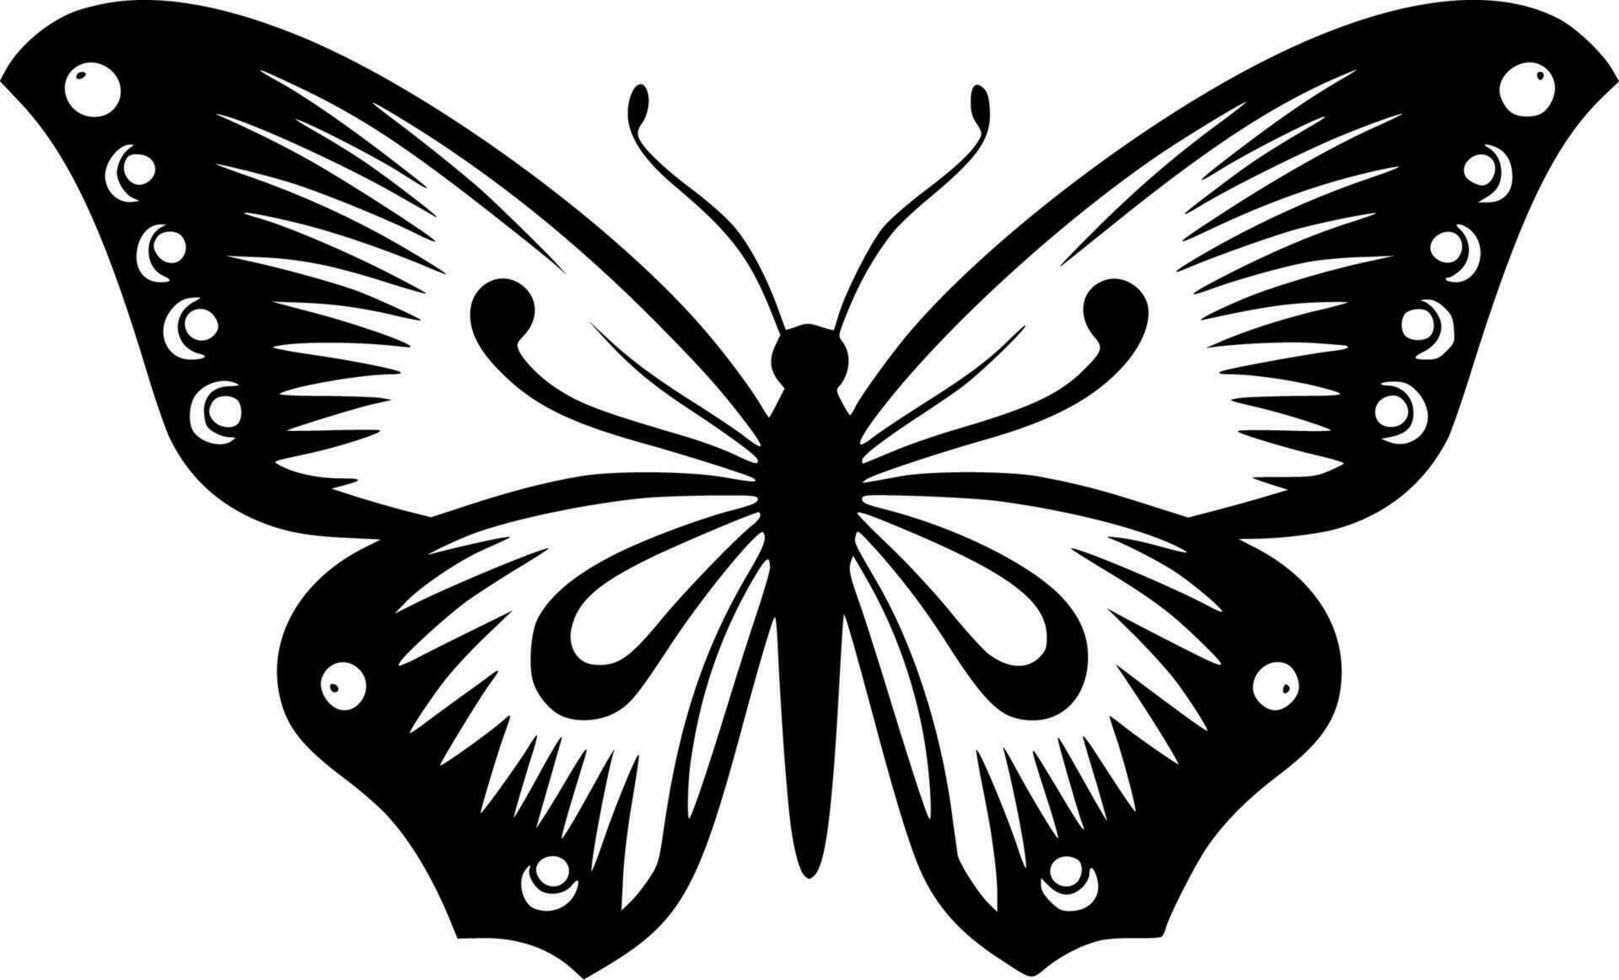 Schmetterlinge - - hoch Qualität Vektor Logo - - Vektor Illustration Ideal zum T-Shirt Grafik